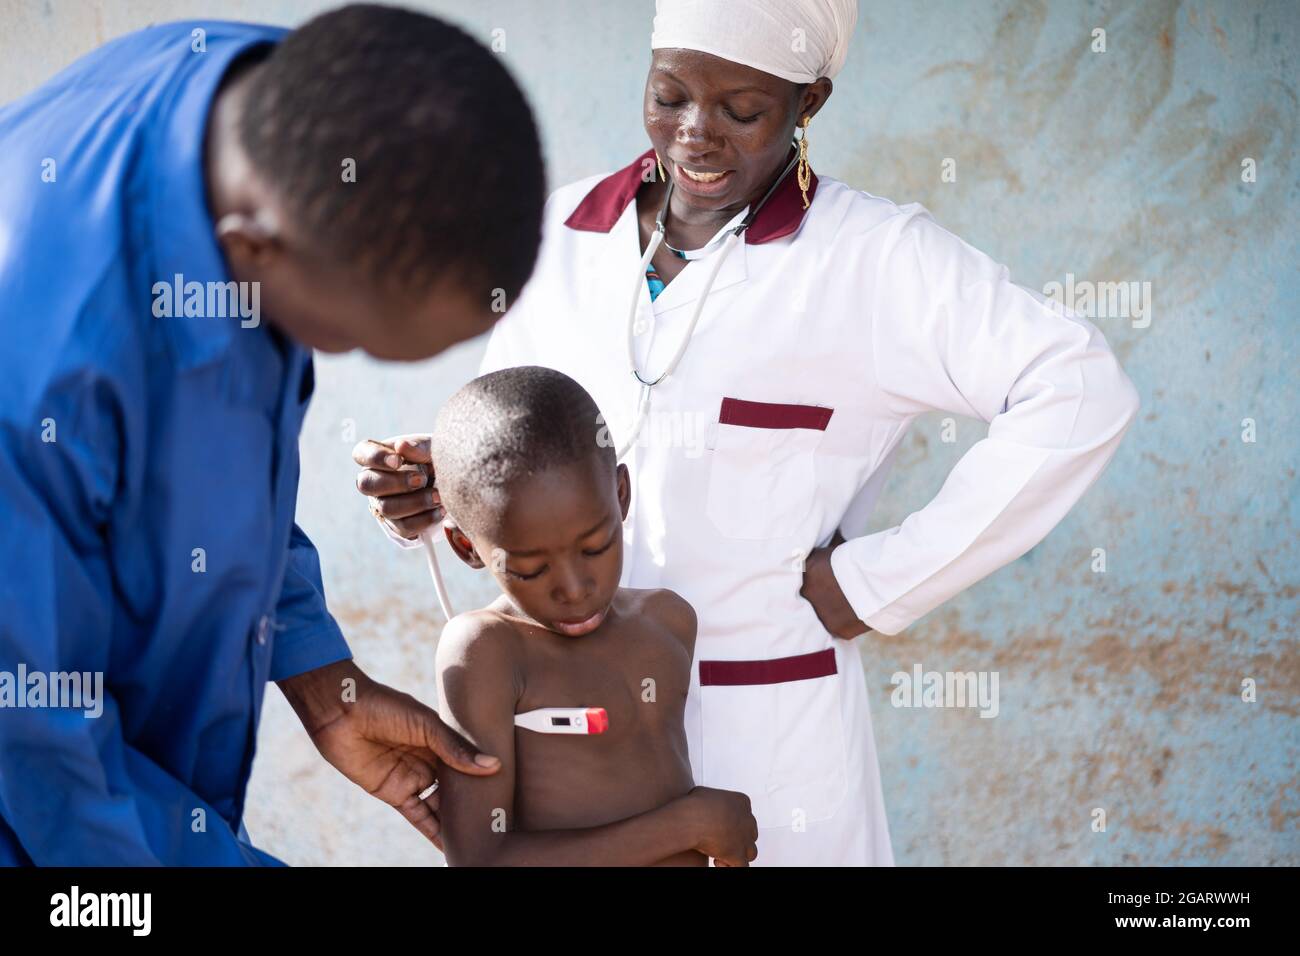 Dans cette image, une jeune infirmière noire parle à un petit garçon africain inquiet subissant un dépistage de température avec un thermomètre numérique au cours d'un routi Banque D'Images